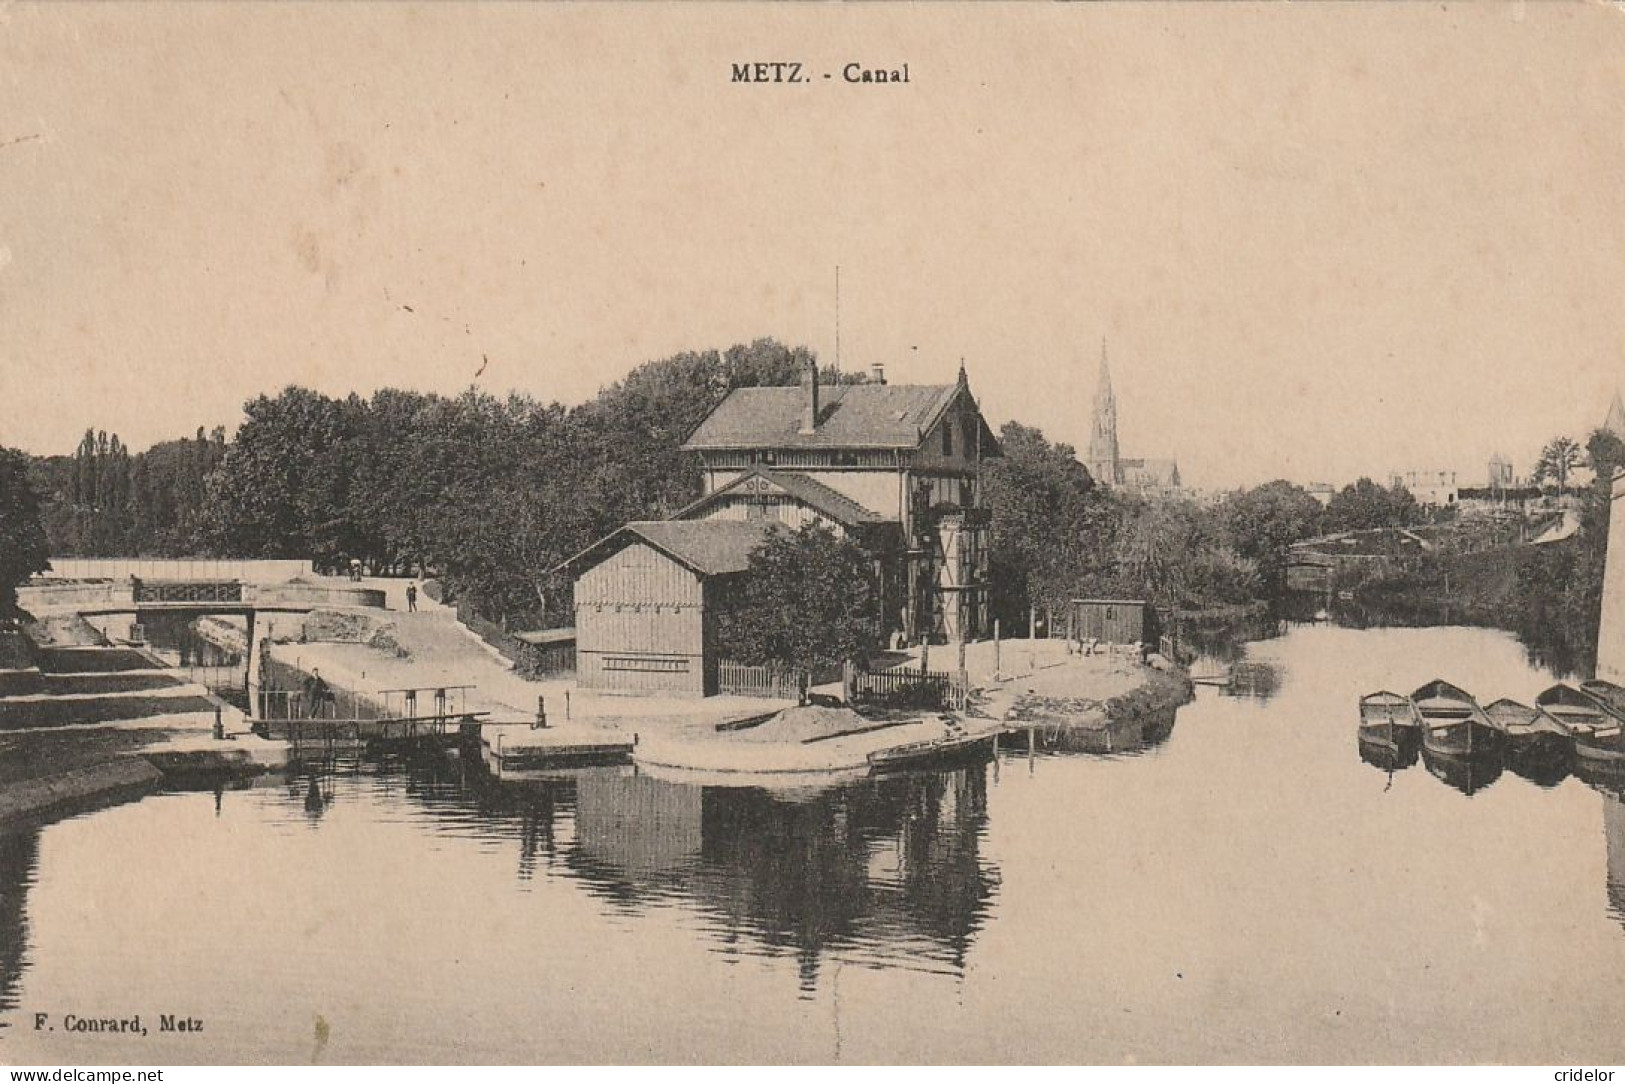 57 - METZ - CANAL DE JOUY-AUX-ARCHES - ECLUSE - MAISON VILLA DE LA NAVIGATION - VOIR ZOOM  - BON ETAT - Metz